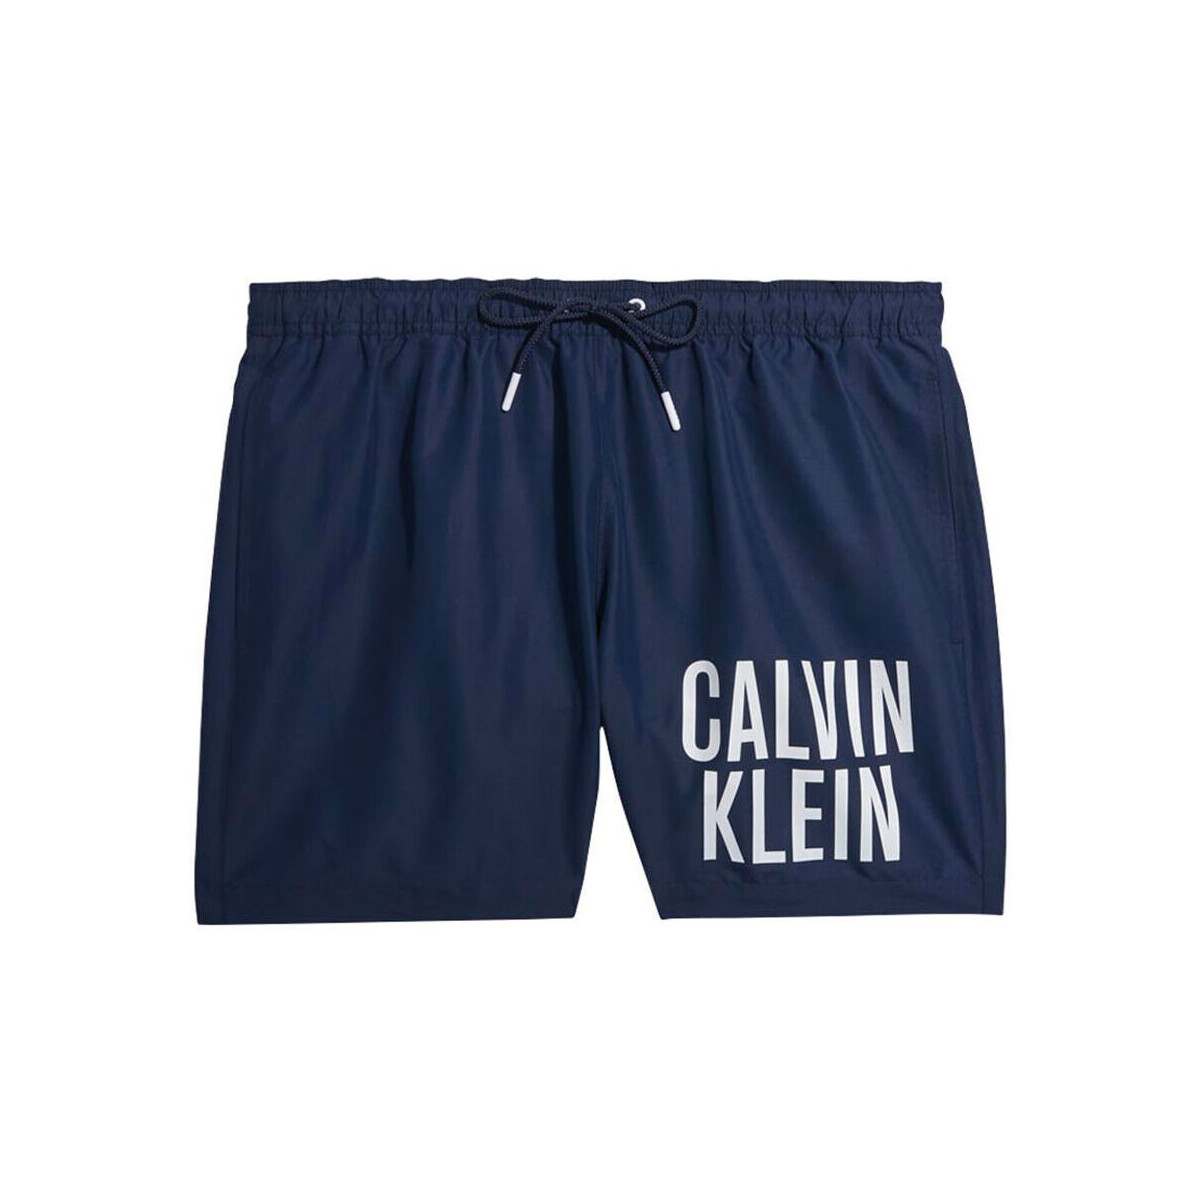 Υφασμάτινα Άνδρας Σόρτς / Βερμούδες Calvin Klein Jeans km0km00794-dca blue Μπλέ